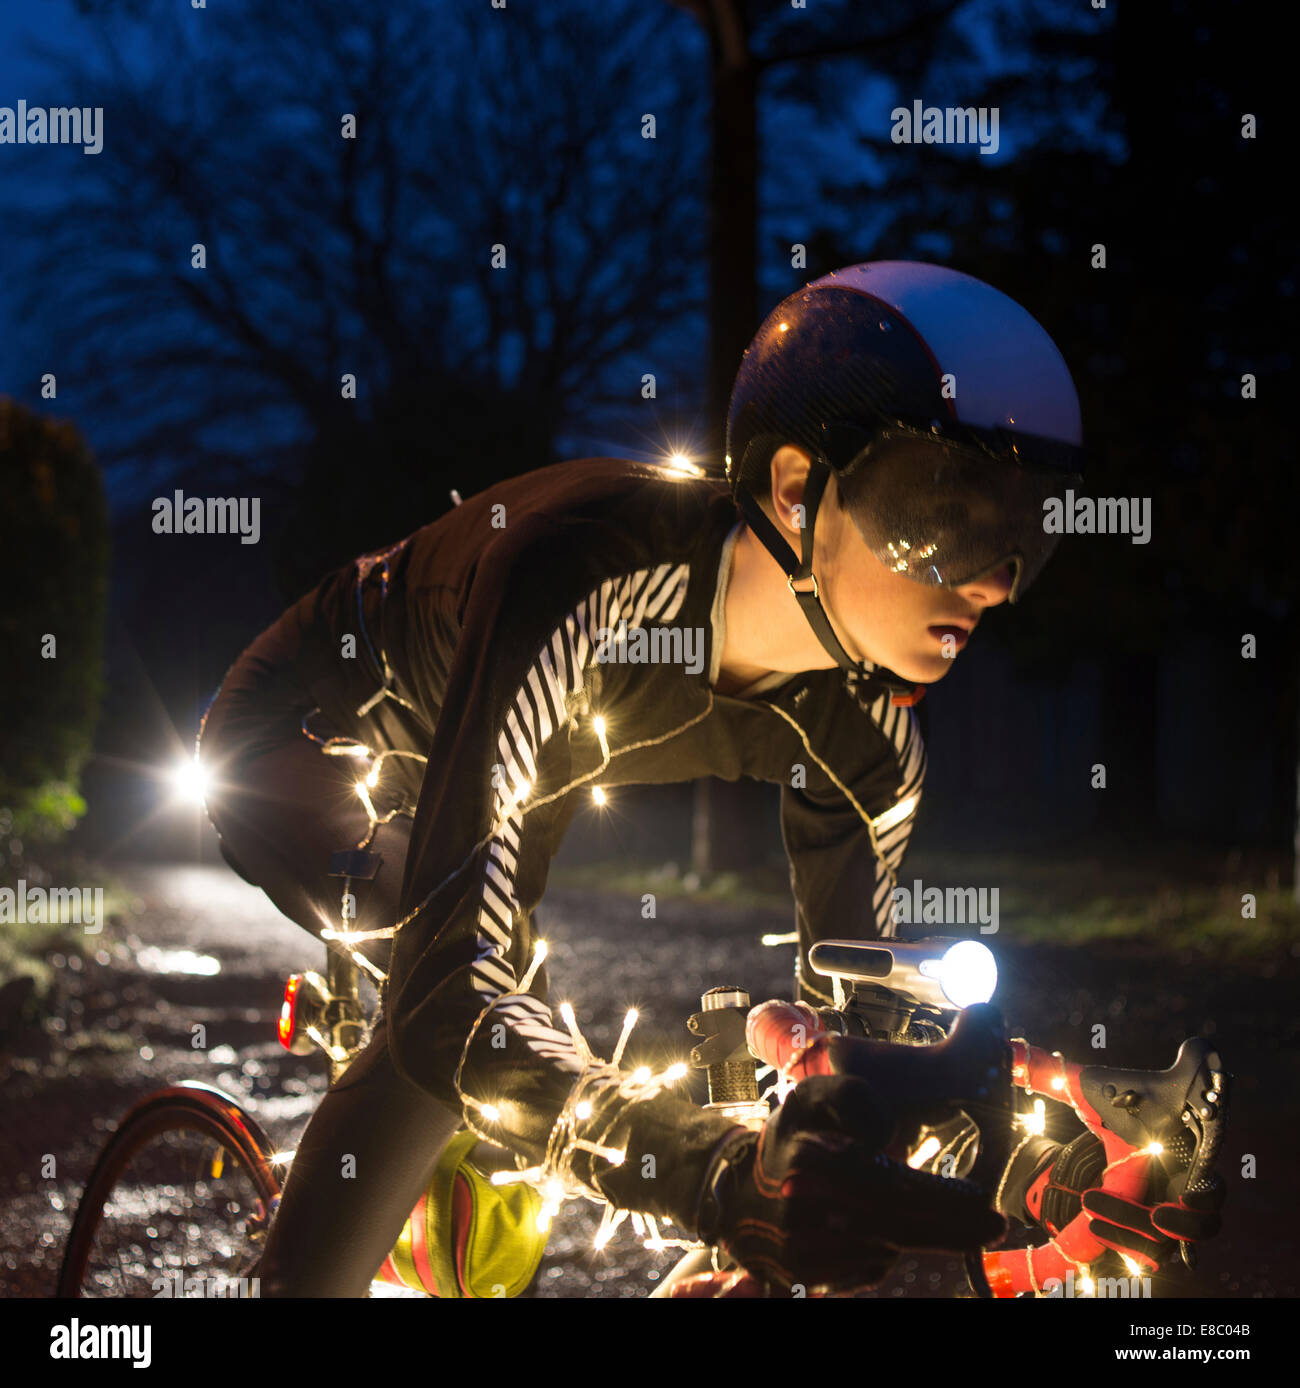 Christmas Tree Radfahrer mit LED-Beleuchtung in der Nacht. Stockfoto